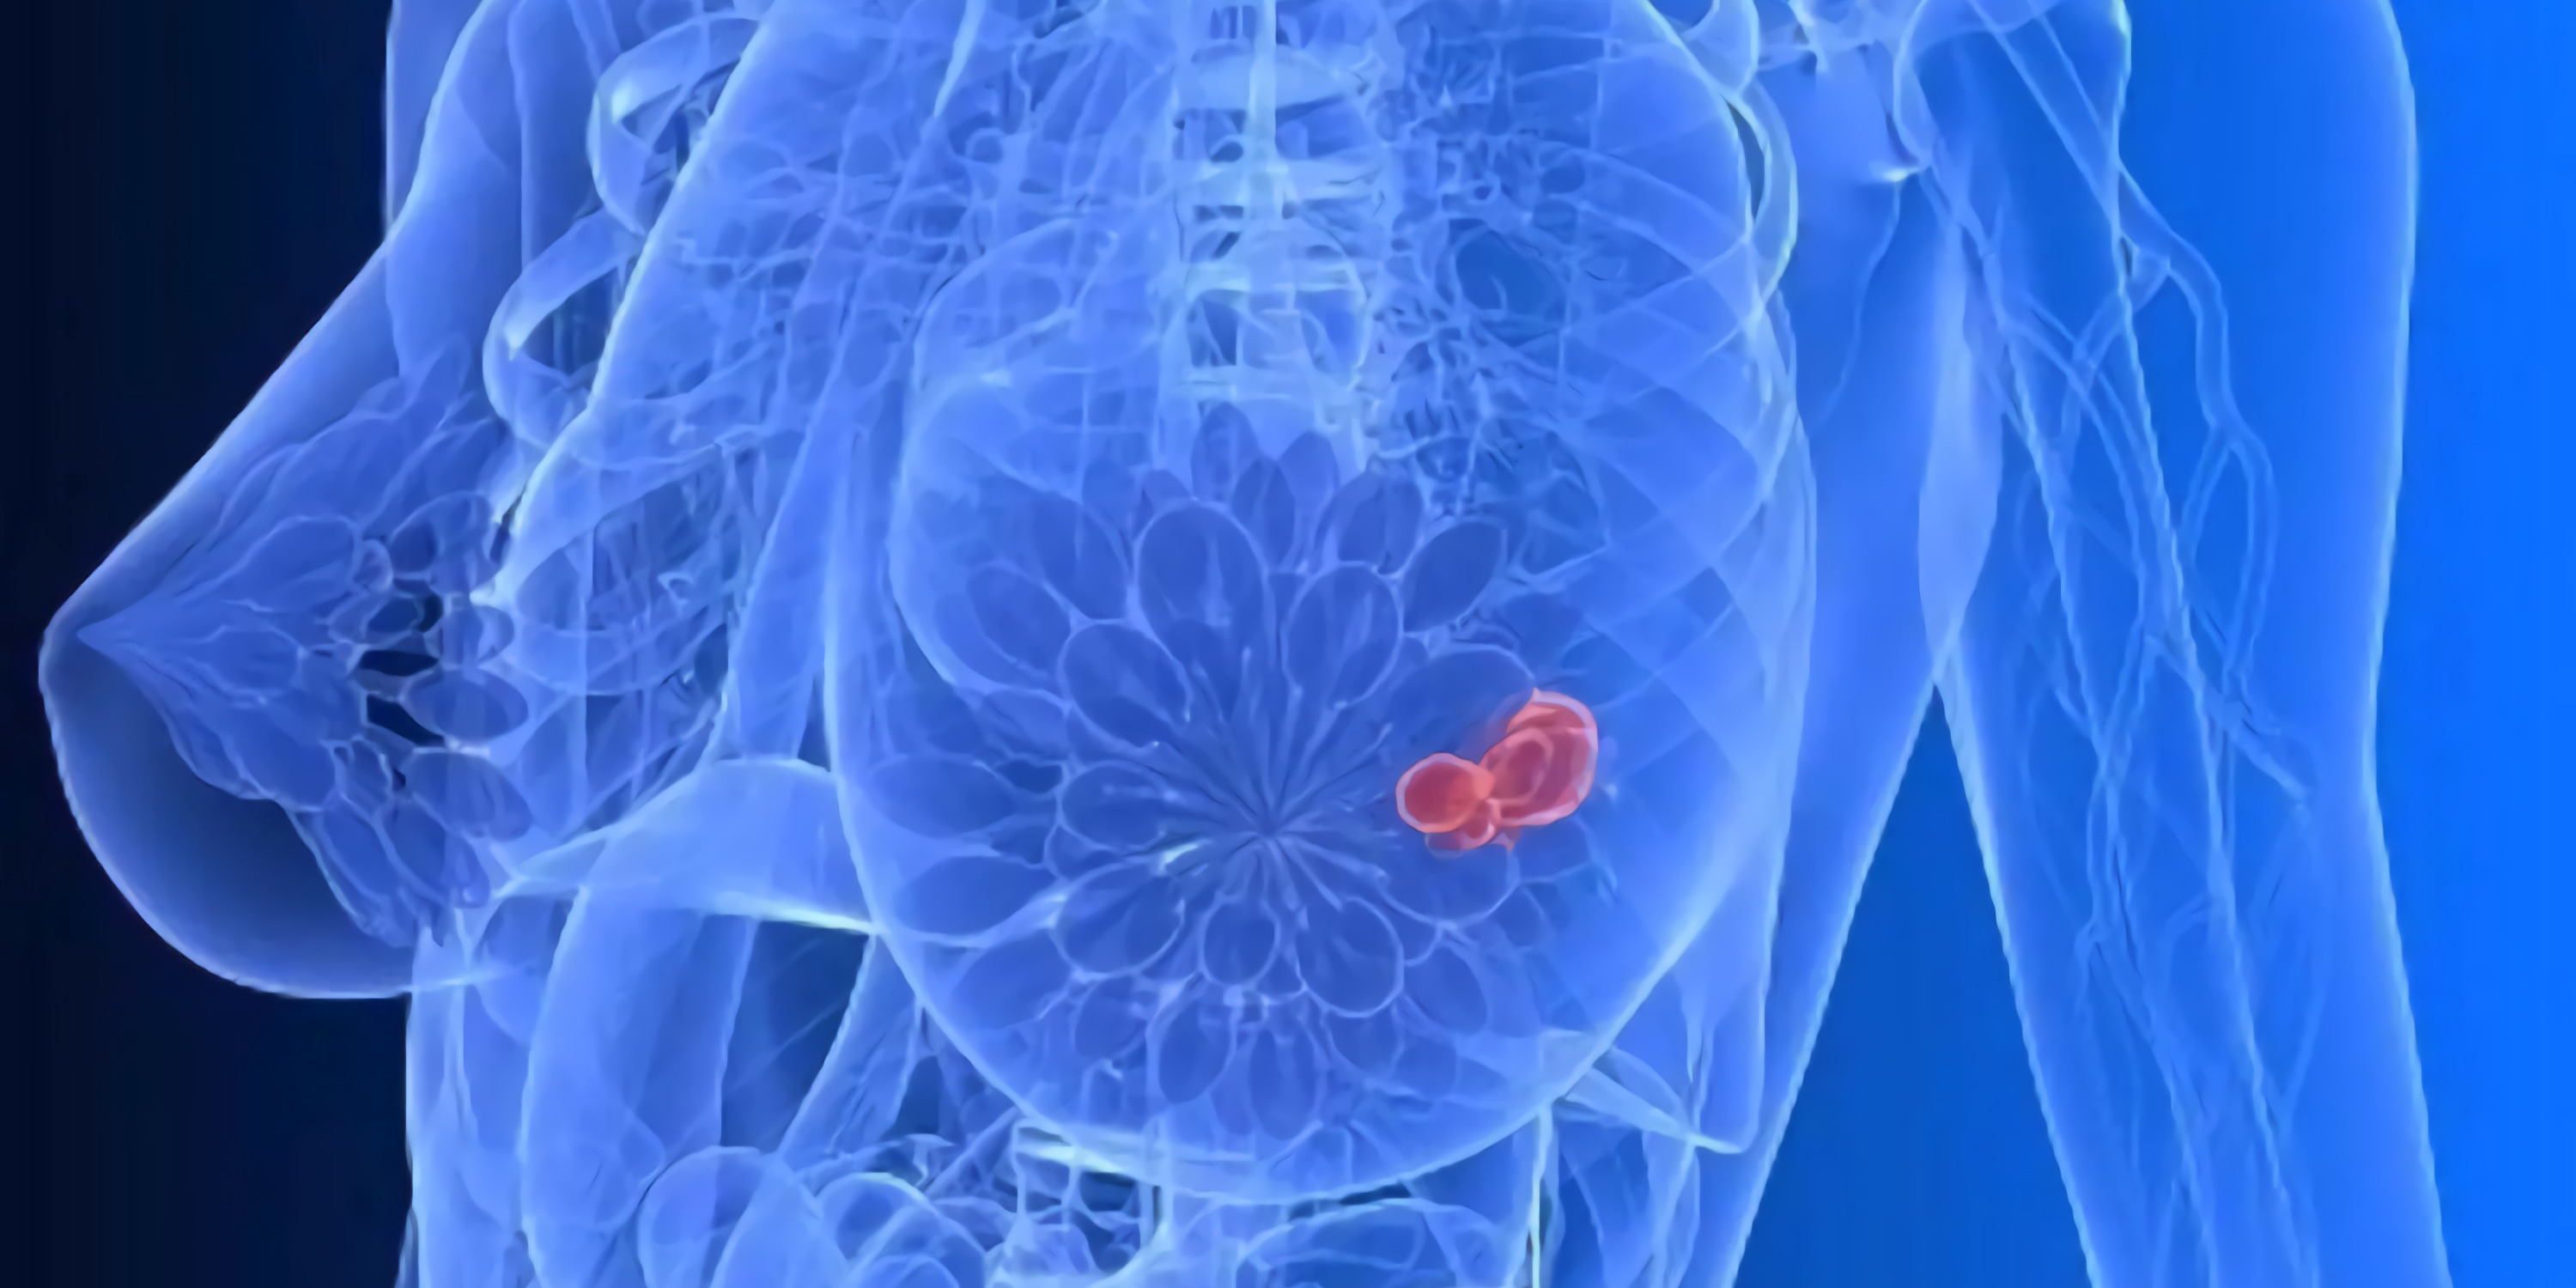 温和的乳腺纤维腺瘤,也要准确鉴别良性或恶性